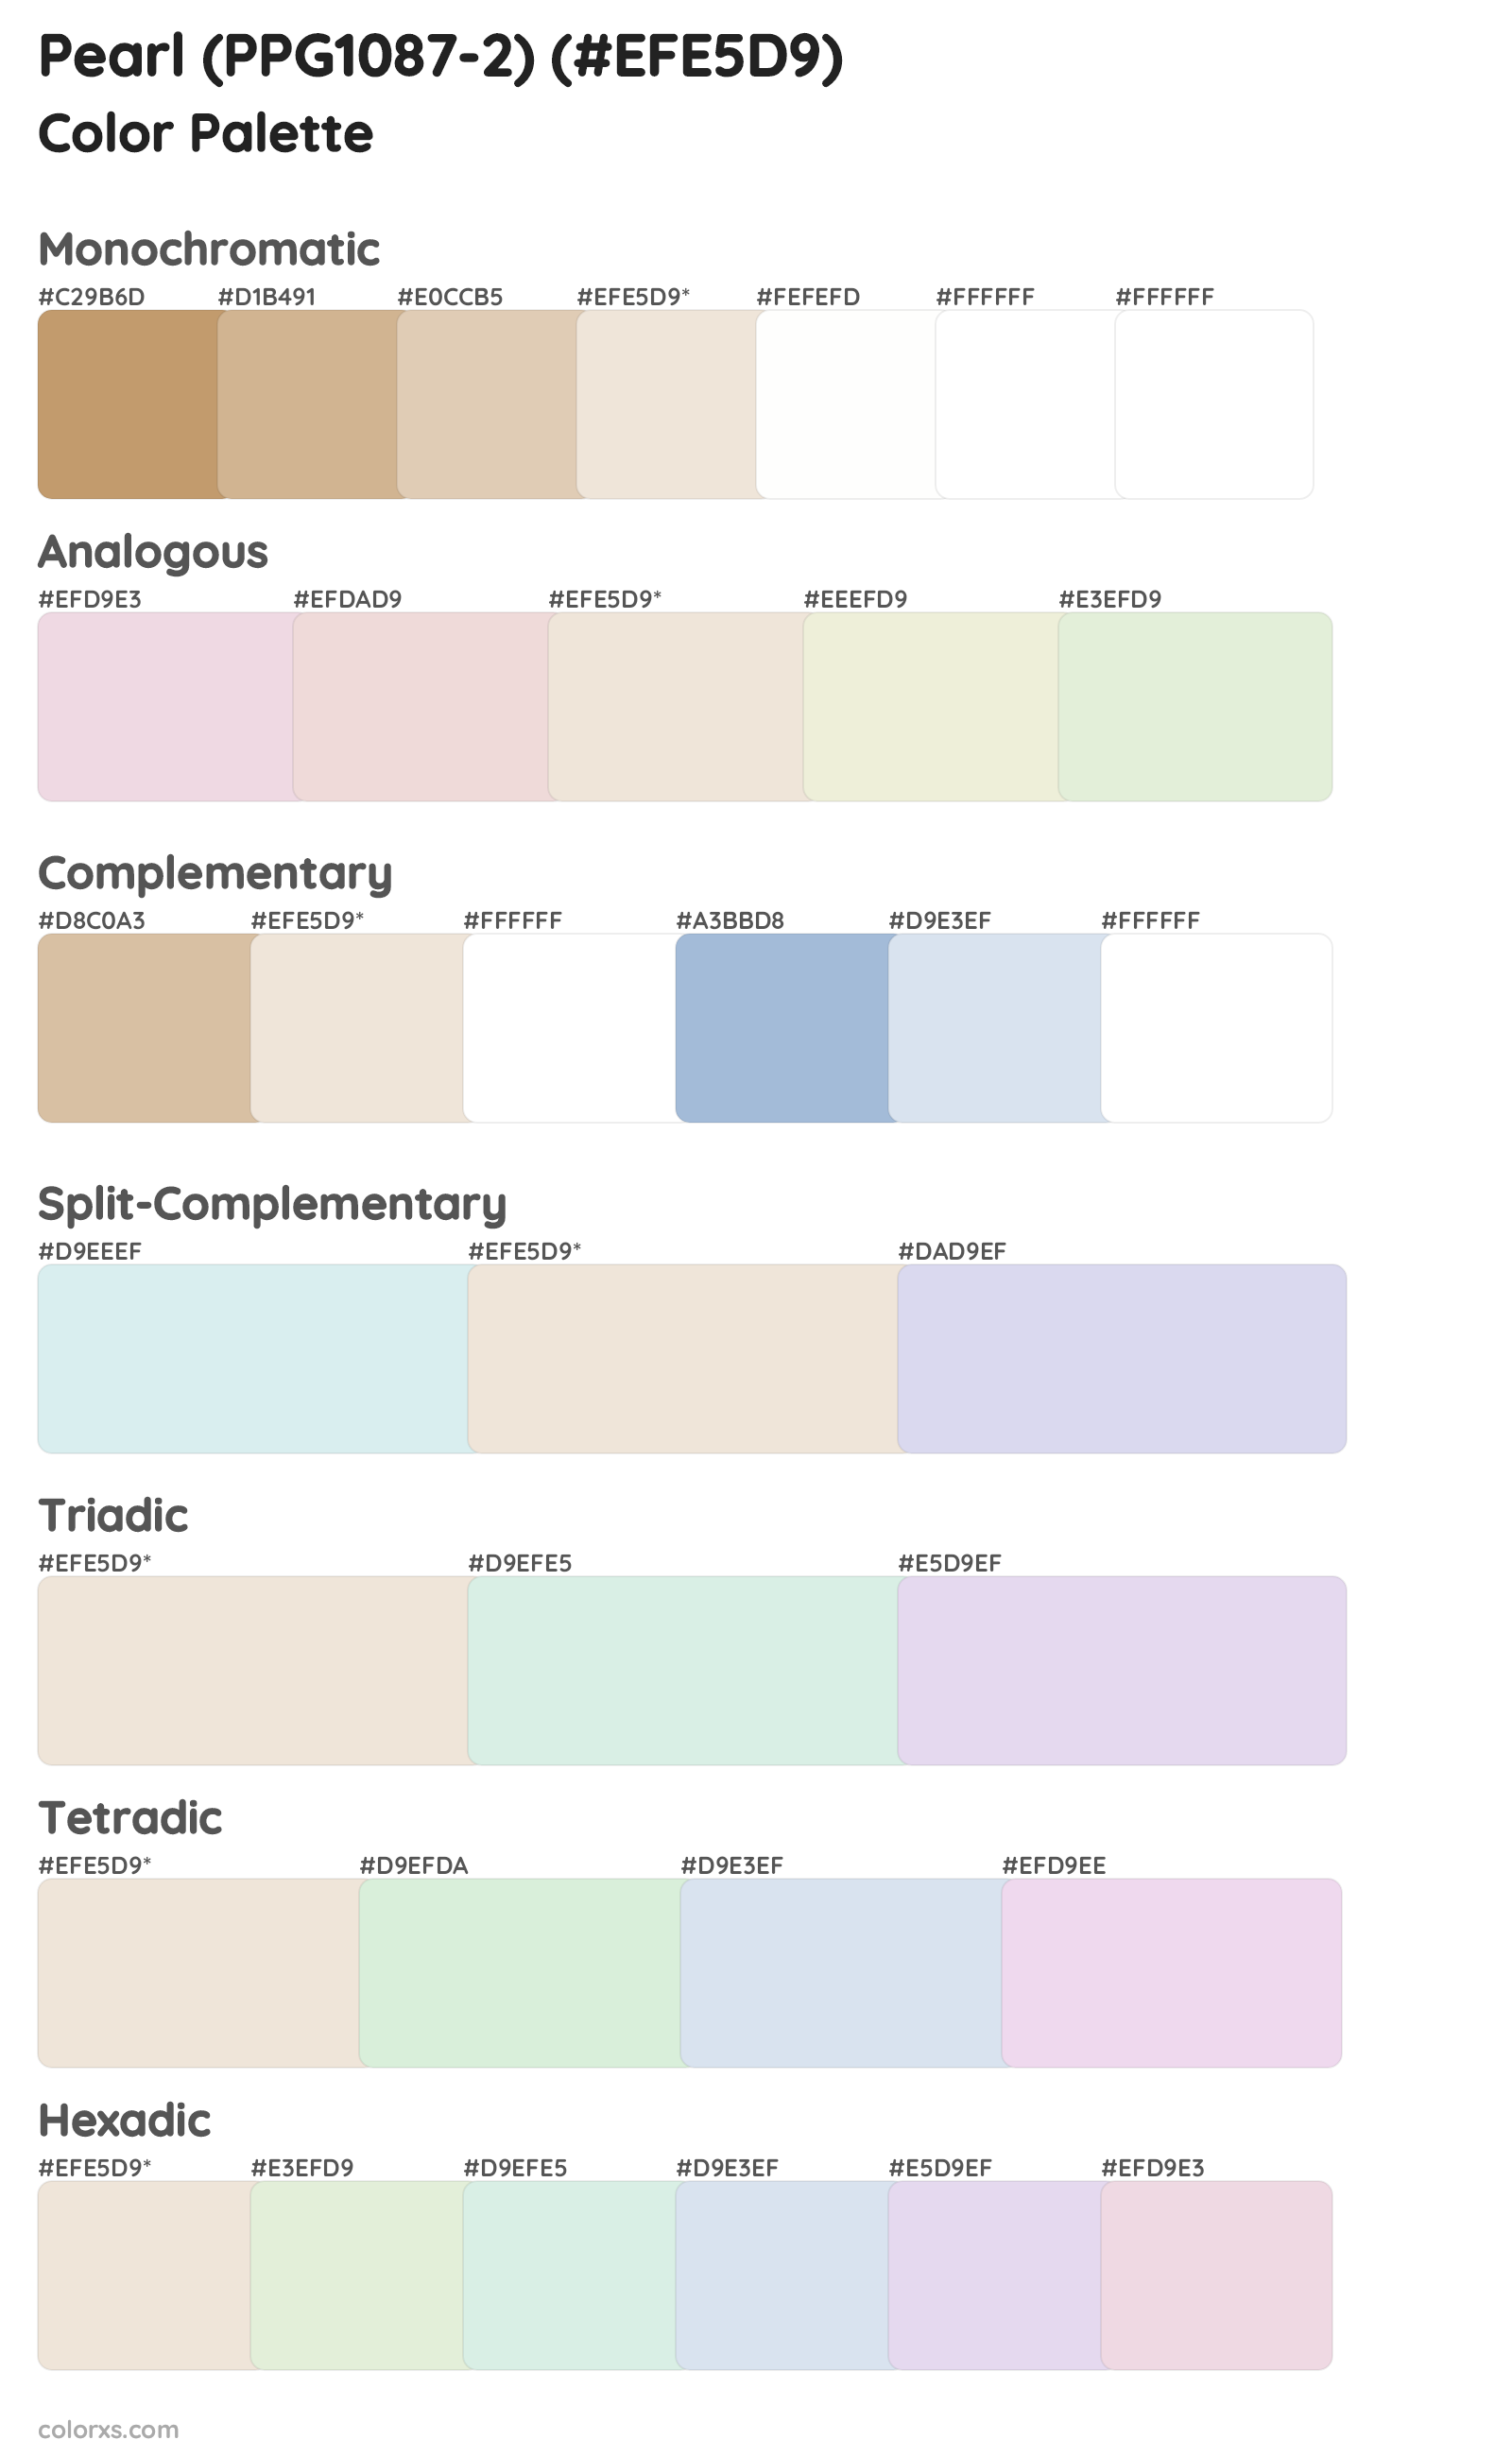 Pearl (PPG1087-2) Color Scheme Palettes